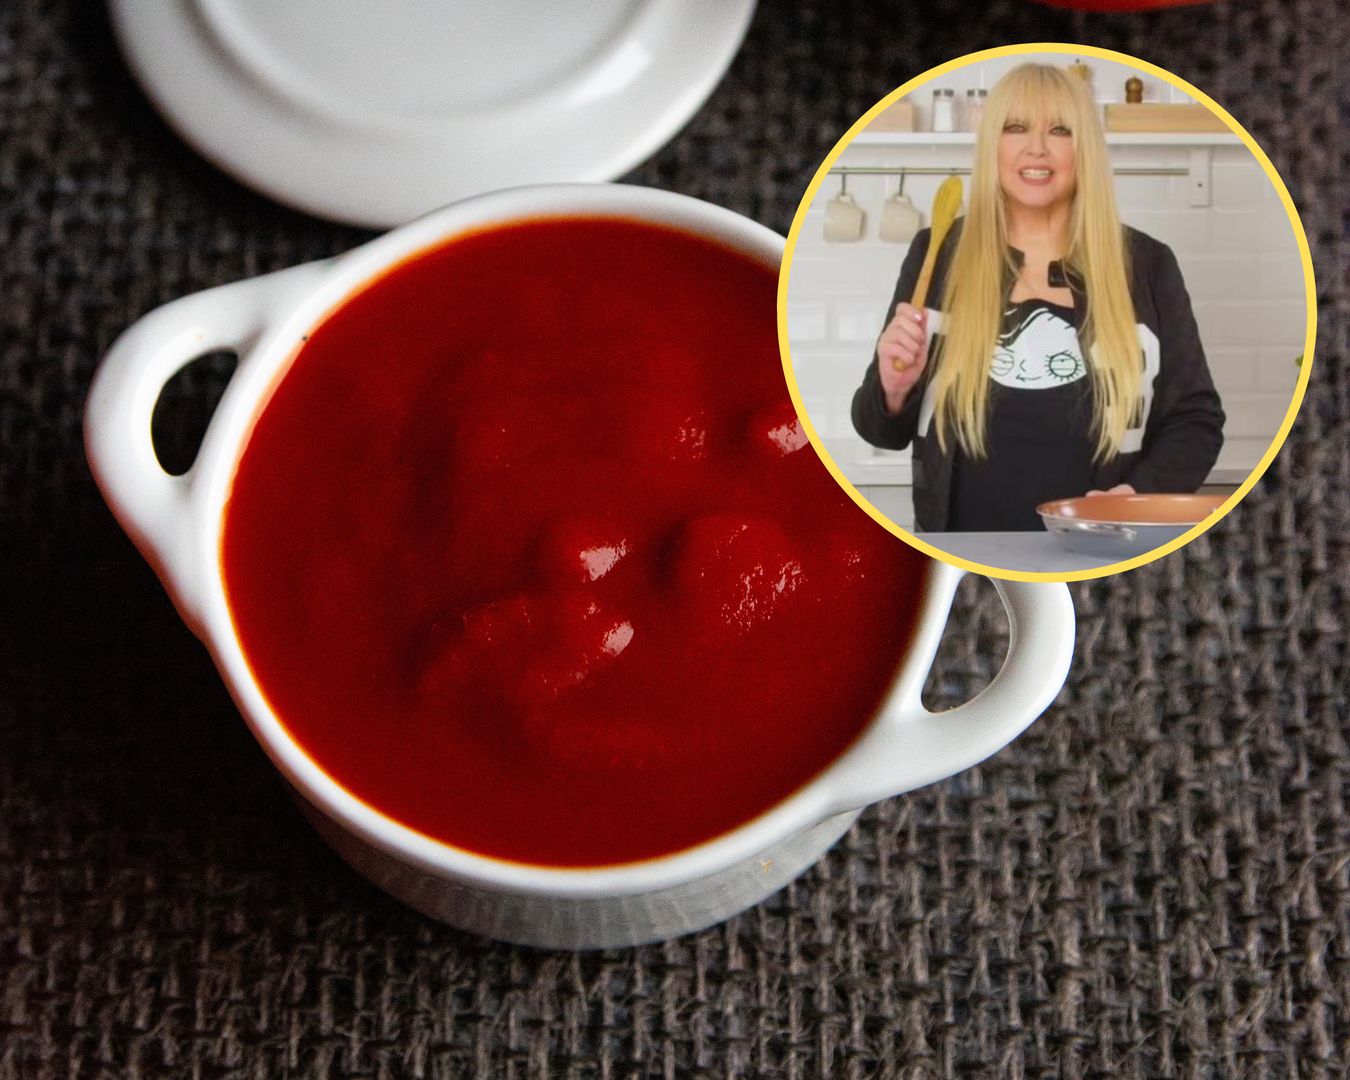 Domowy ketchup Maryli Rodowicz - idealny do zapiekanek!